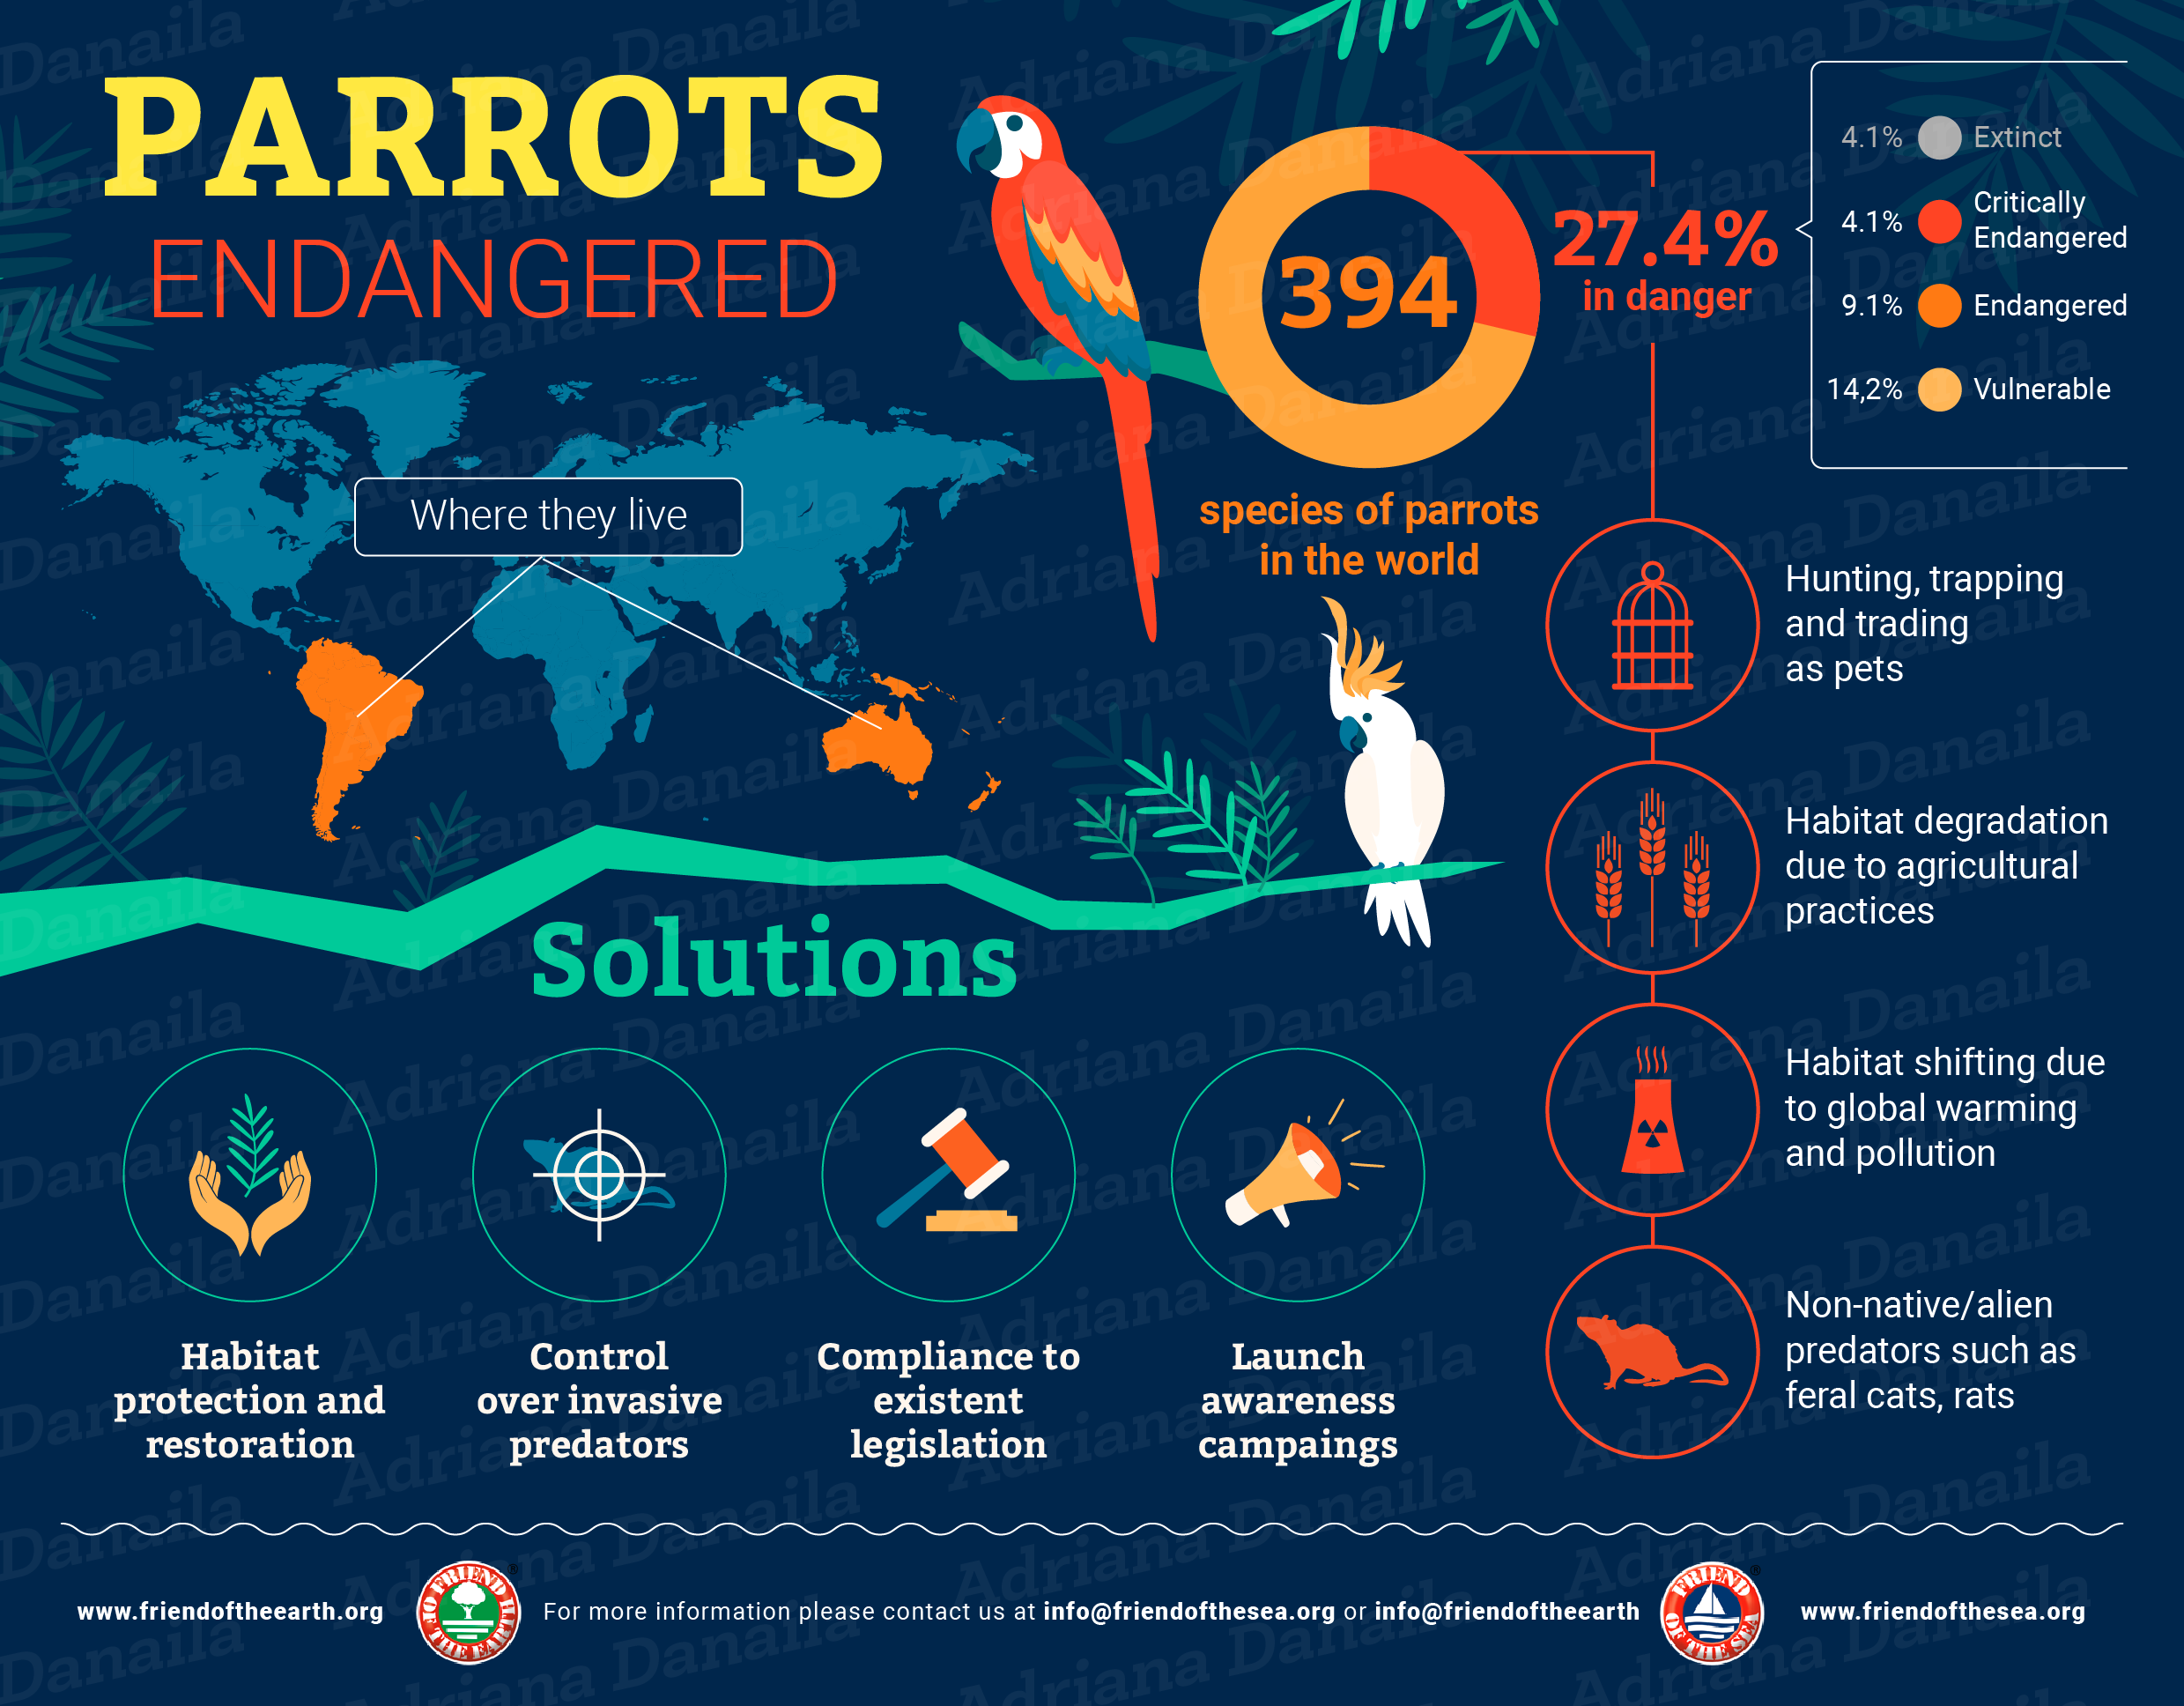 Save the Parrots